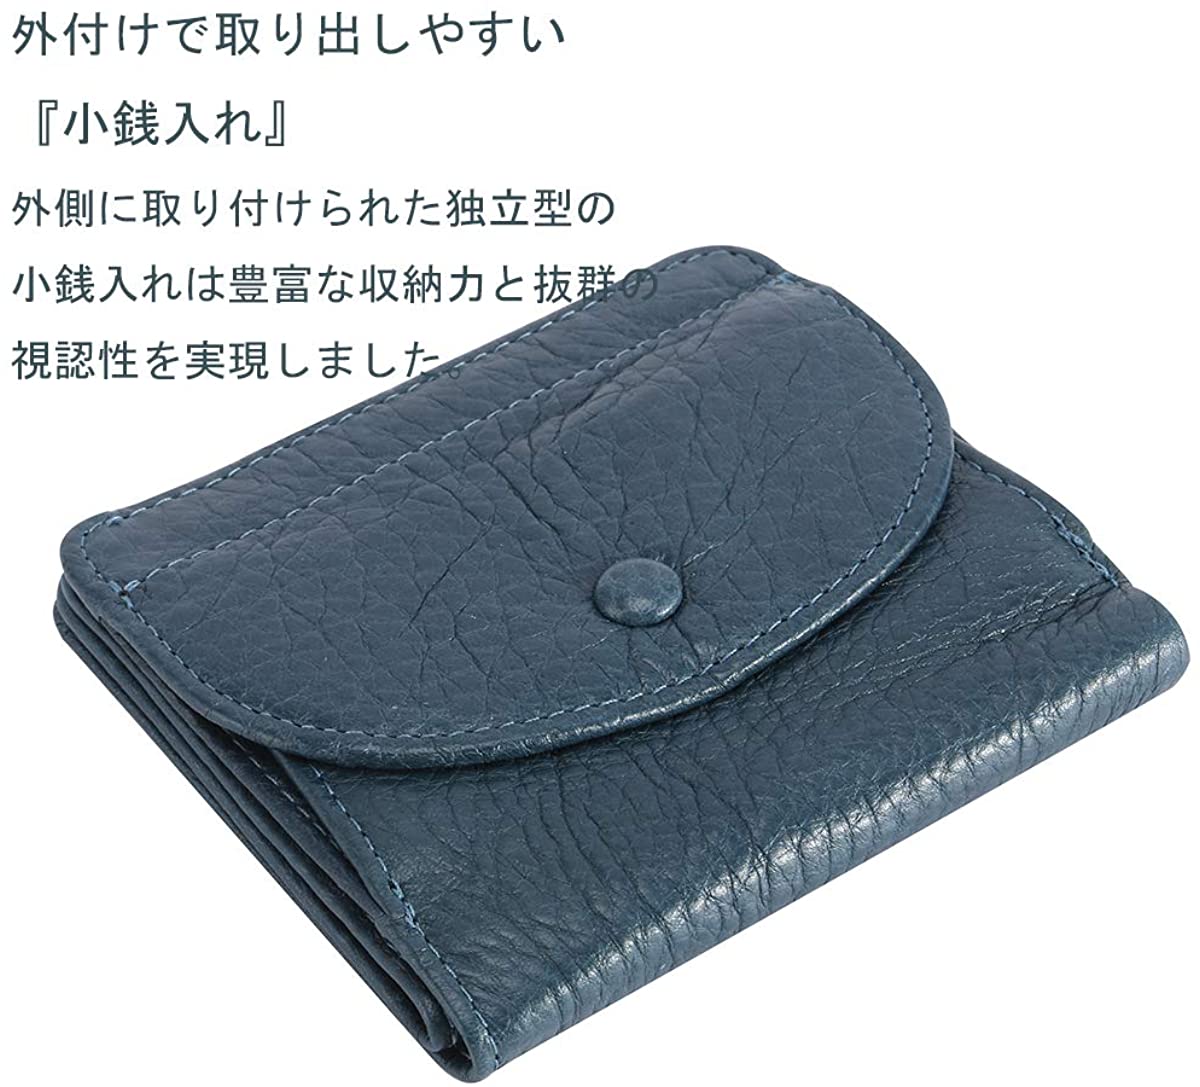 小銭入れ ボックス型 コインケース 大容量 カードケース コンパクトミニ財布 本革 二つ折り 小さい財布 ワンタッチ ボタン開閉 (ブルー)